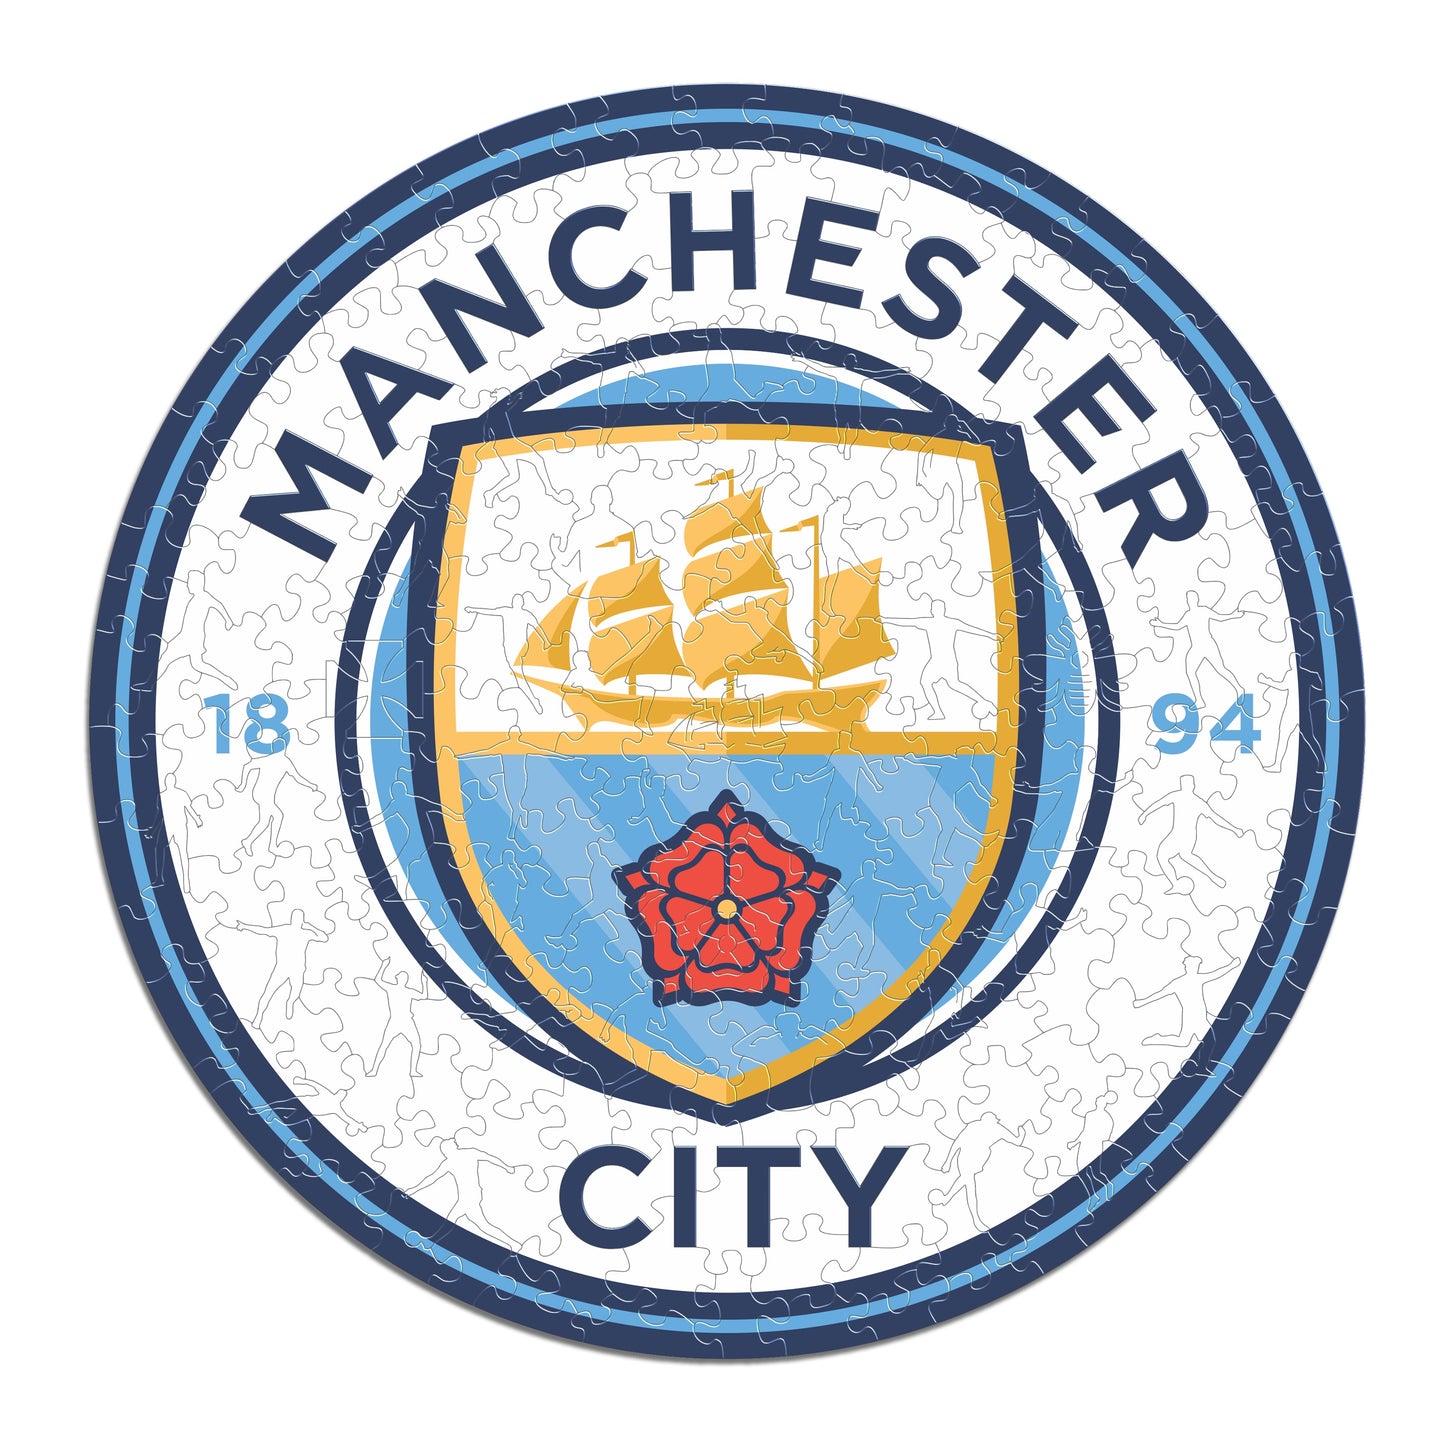 Logo Manchester City® - Puzzle di Legno Ufficiale